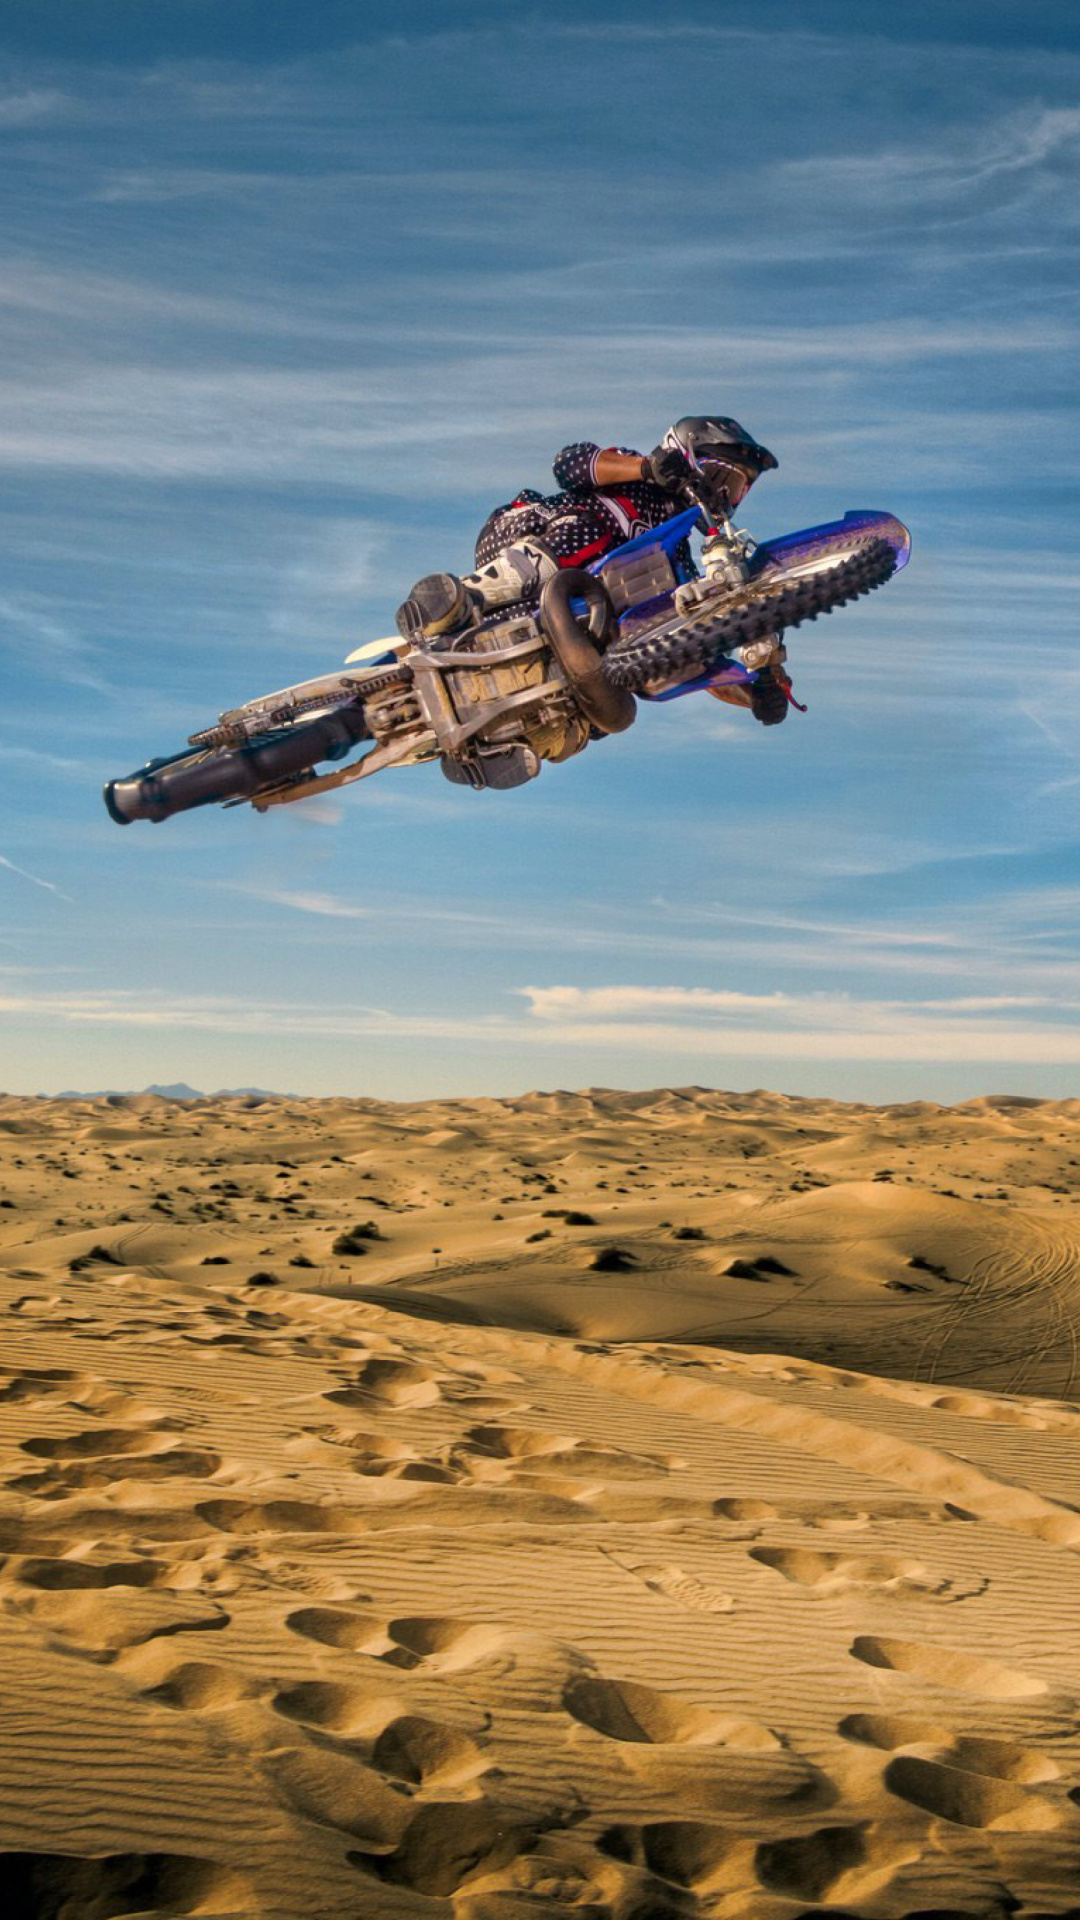 Motocross in Desert wallpaper 1080x1920